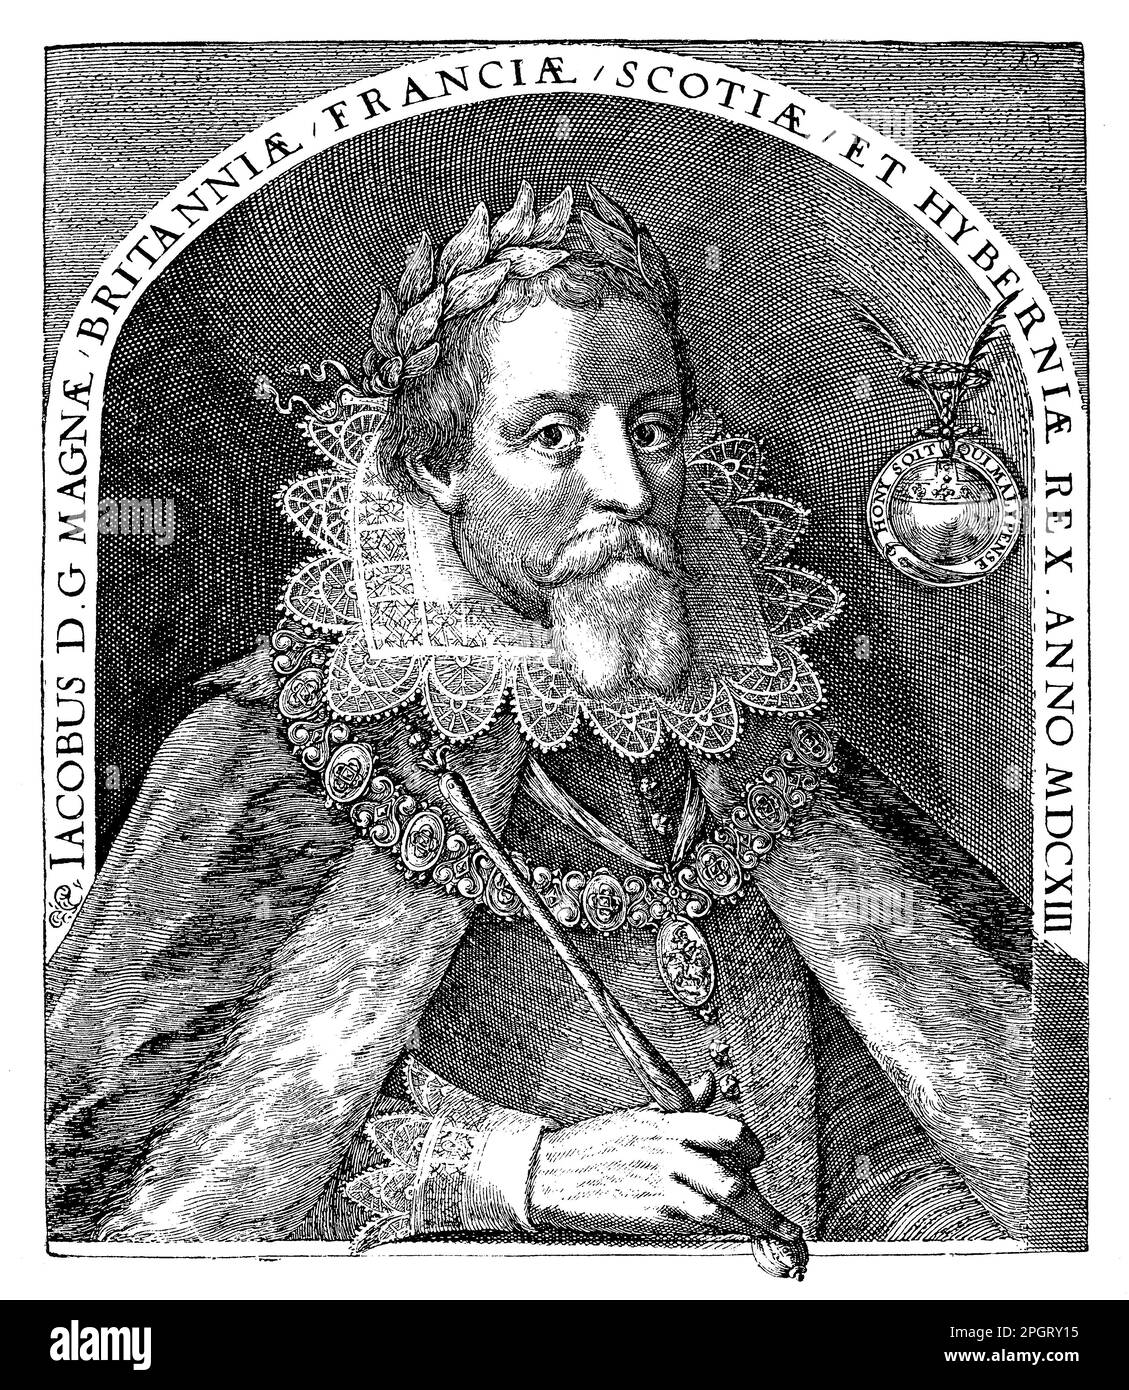 Giacomo VI di Scozia, conosciuto anche come Giacomo i d'Inghilterra, fu un re scozzese che visse dal 1566 al 1625. Succedette a sua madre, Maria, Regina di Scozia, come re di Scozia all'età di 13 anni e più tardi ereditò il trono inglese alla morte della regina Elisabetta I. Giacomo era conosciuto per il suo amore per l'apprendimento e il patrocinio delle arti, così come per i suoi sforzi per promuovere l'unità religiosa nei suoi regni. Autorizzò la creazione della Bibbia di Re Giacomo, che divenne un punto di riferimento della letteratura inglese e un'opera di definizione della riforma protestante. Giacomo affrontò anche sfide politiche durante il suo regno Foto Stock